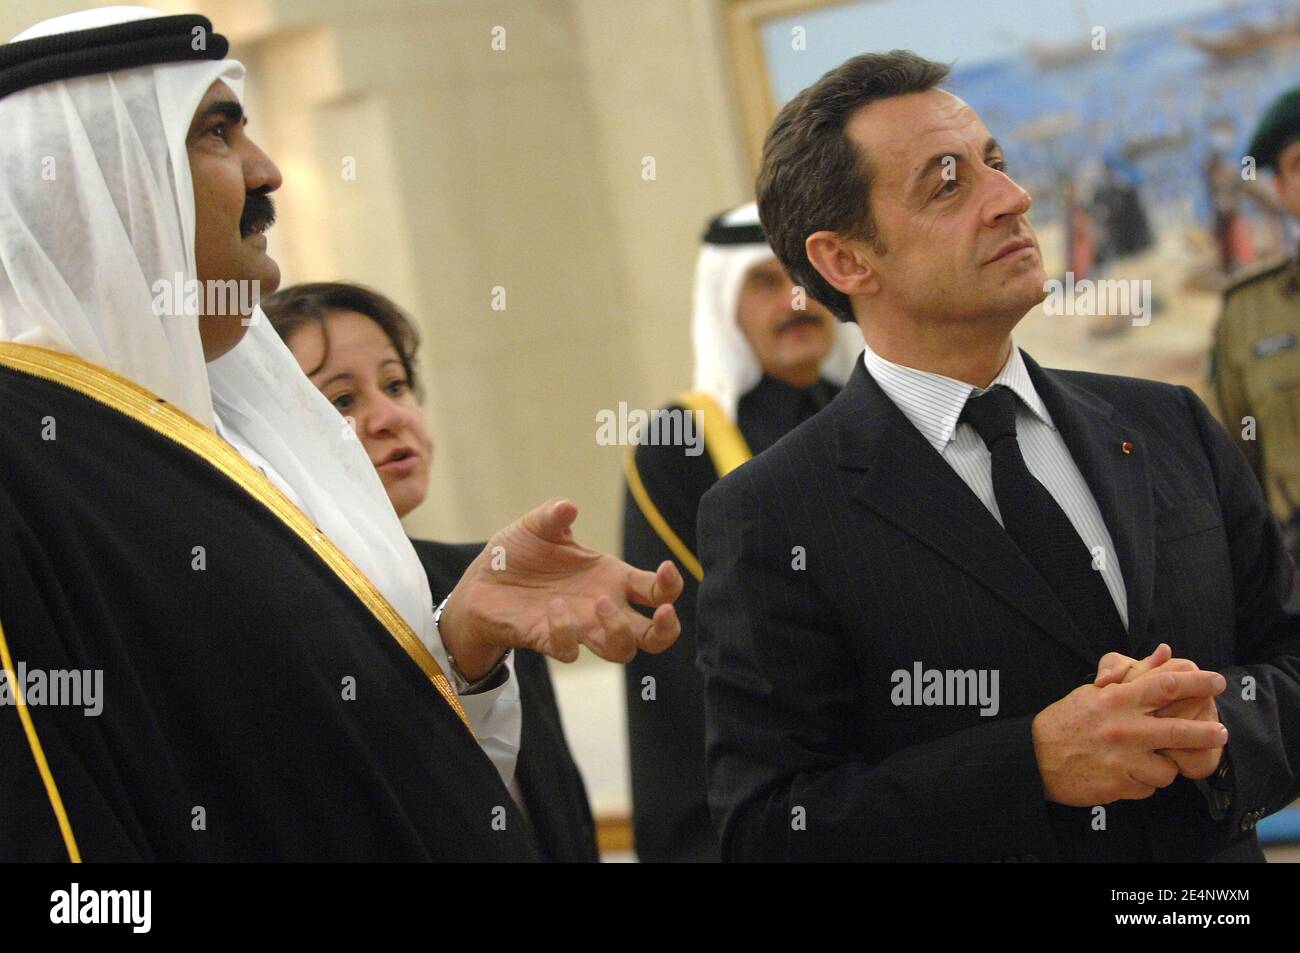 L'émir cheikh Hamad Bin Khalifa Al Thani du Qatar reçoit le président français Nicolas Sarkozy au Palais Emiri de Doha, au Qatar, le 14 janvier 2008, à l'occasion de la deuxième étape de sa visite dans la région du golfe Arabo-Persique. Photo par Eric Hadj-Pool/ABACAPRESS.COM Banque D'Images